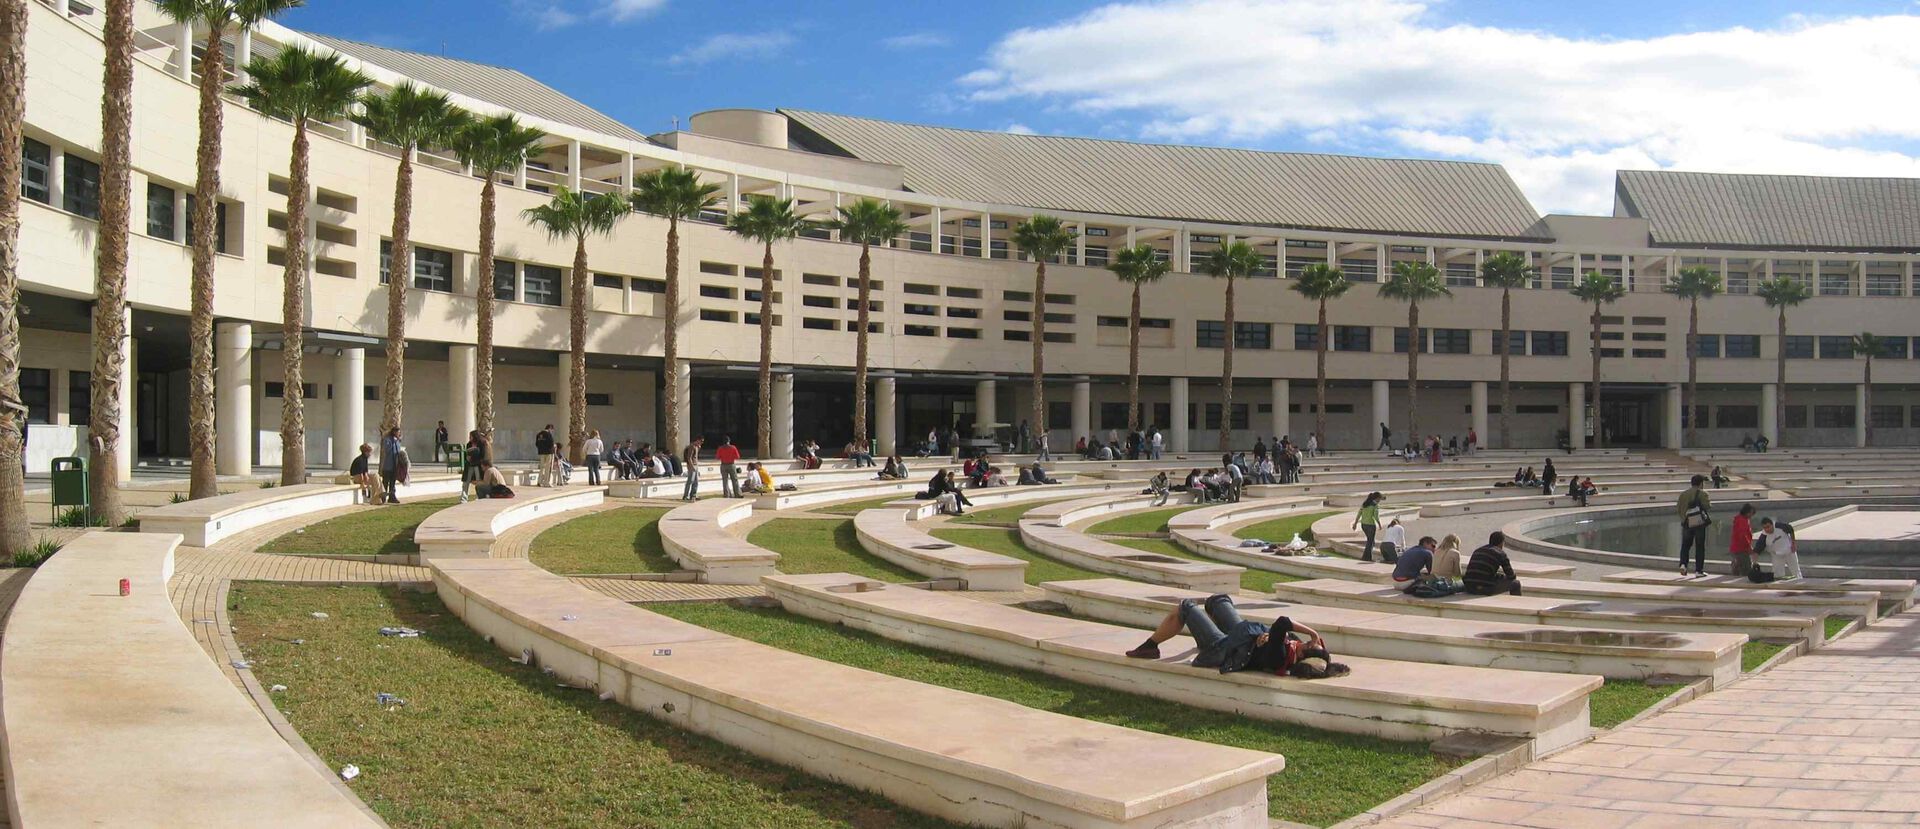 Campus Alicante med en beige, buet murbygning. Flere palmetrær og grønt arealer med benker i stein,